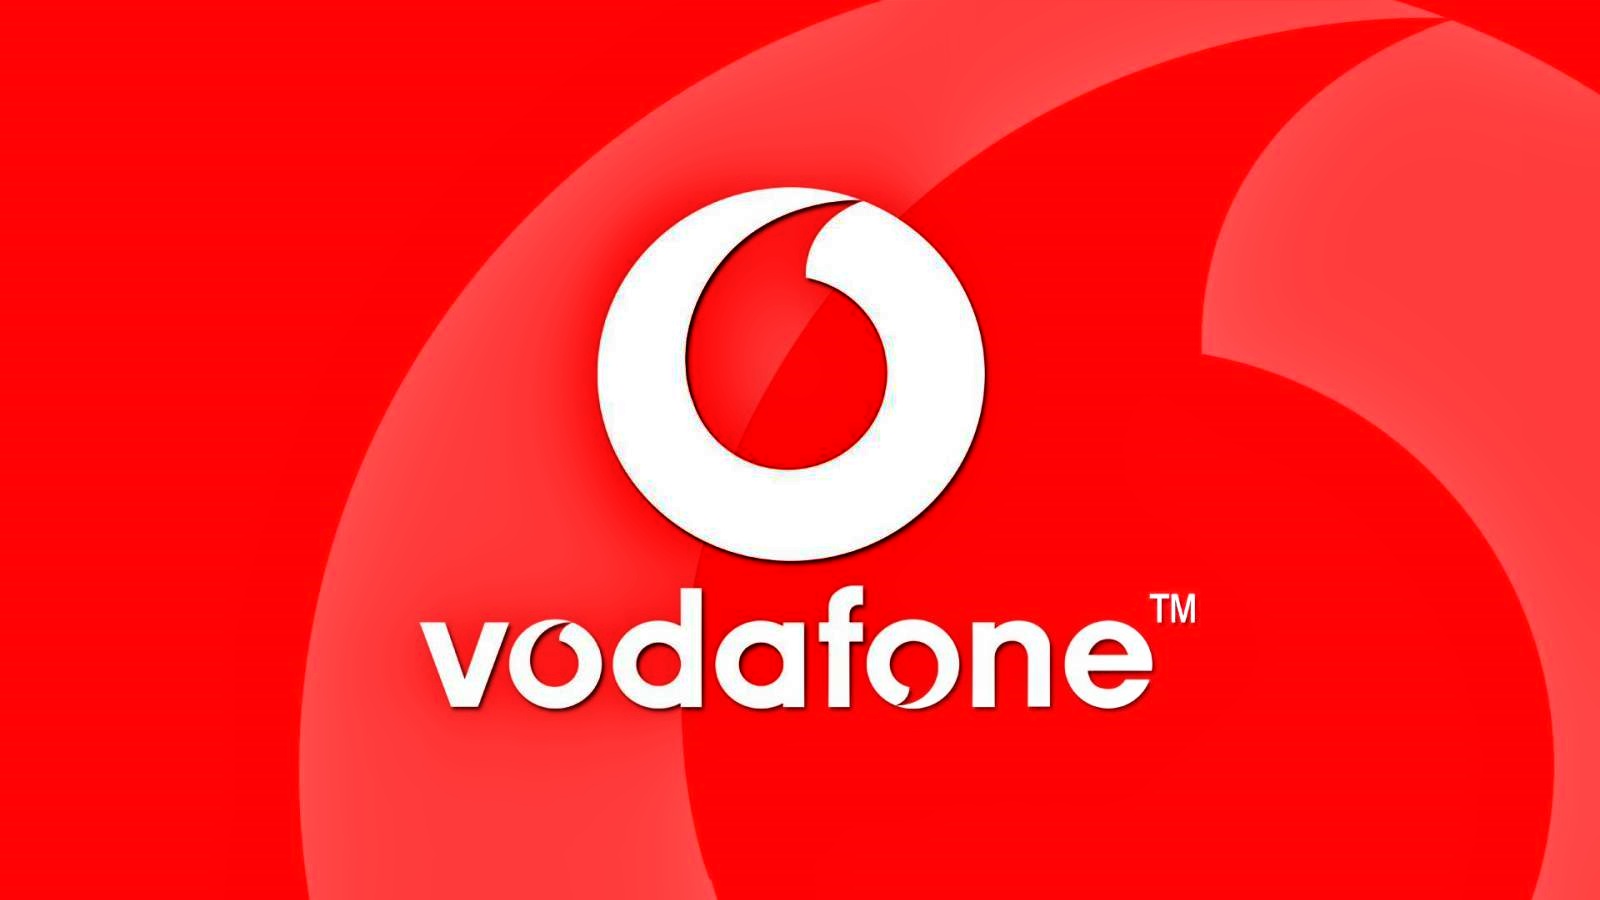 Vodafone Anuntul EXCLUSIV Clientii Romani GRATUIT Acum Romania